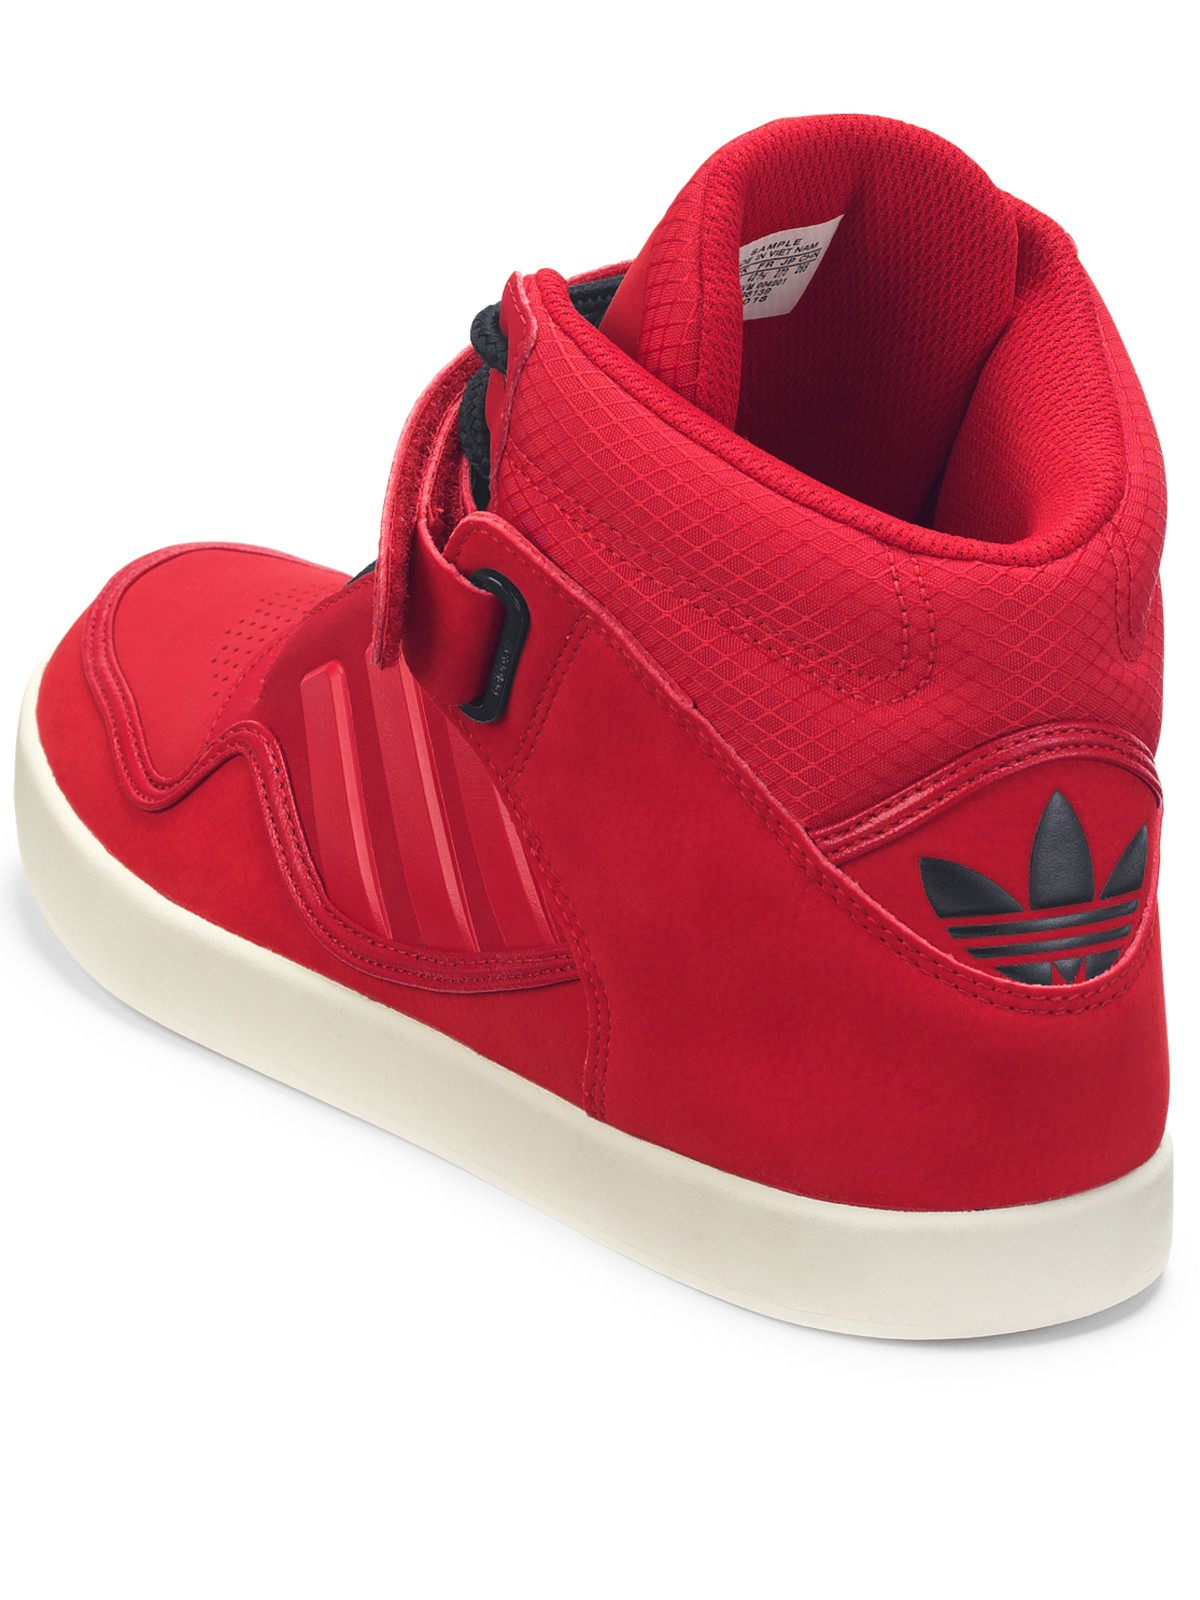 adidas originals adi rise 2.0 hi top mens trainers red - Helvetiq